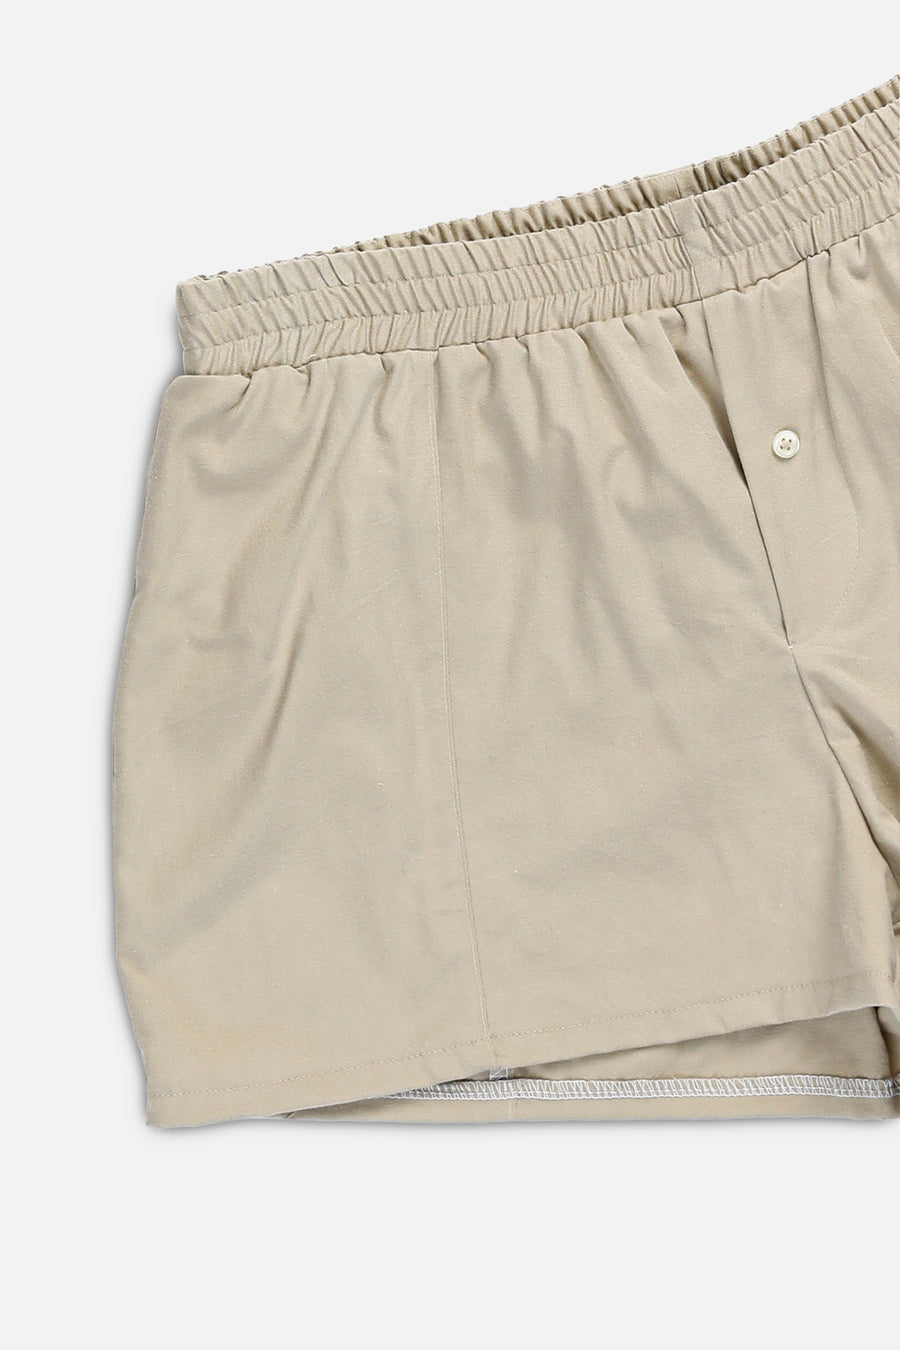 Rework Oxford Mini Boxer Shorts - XS, L